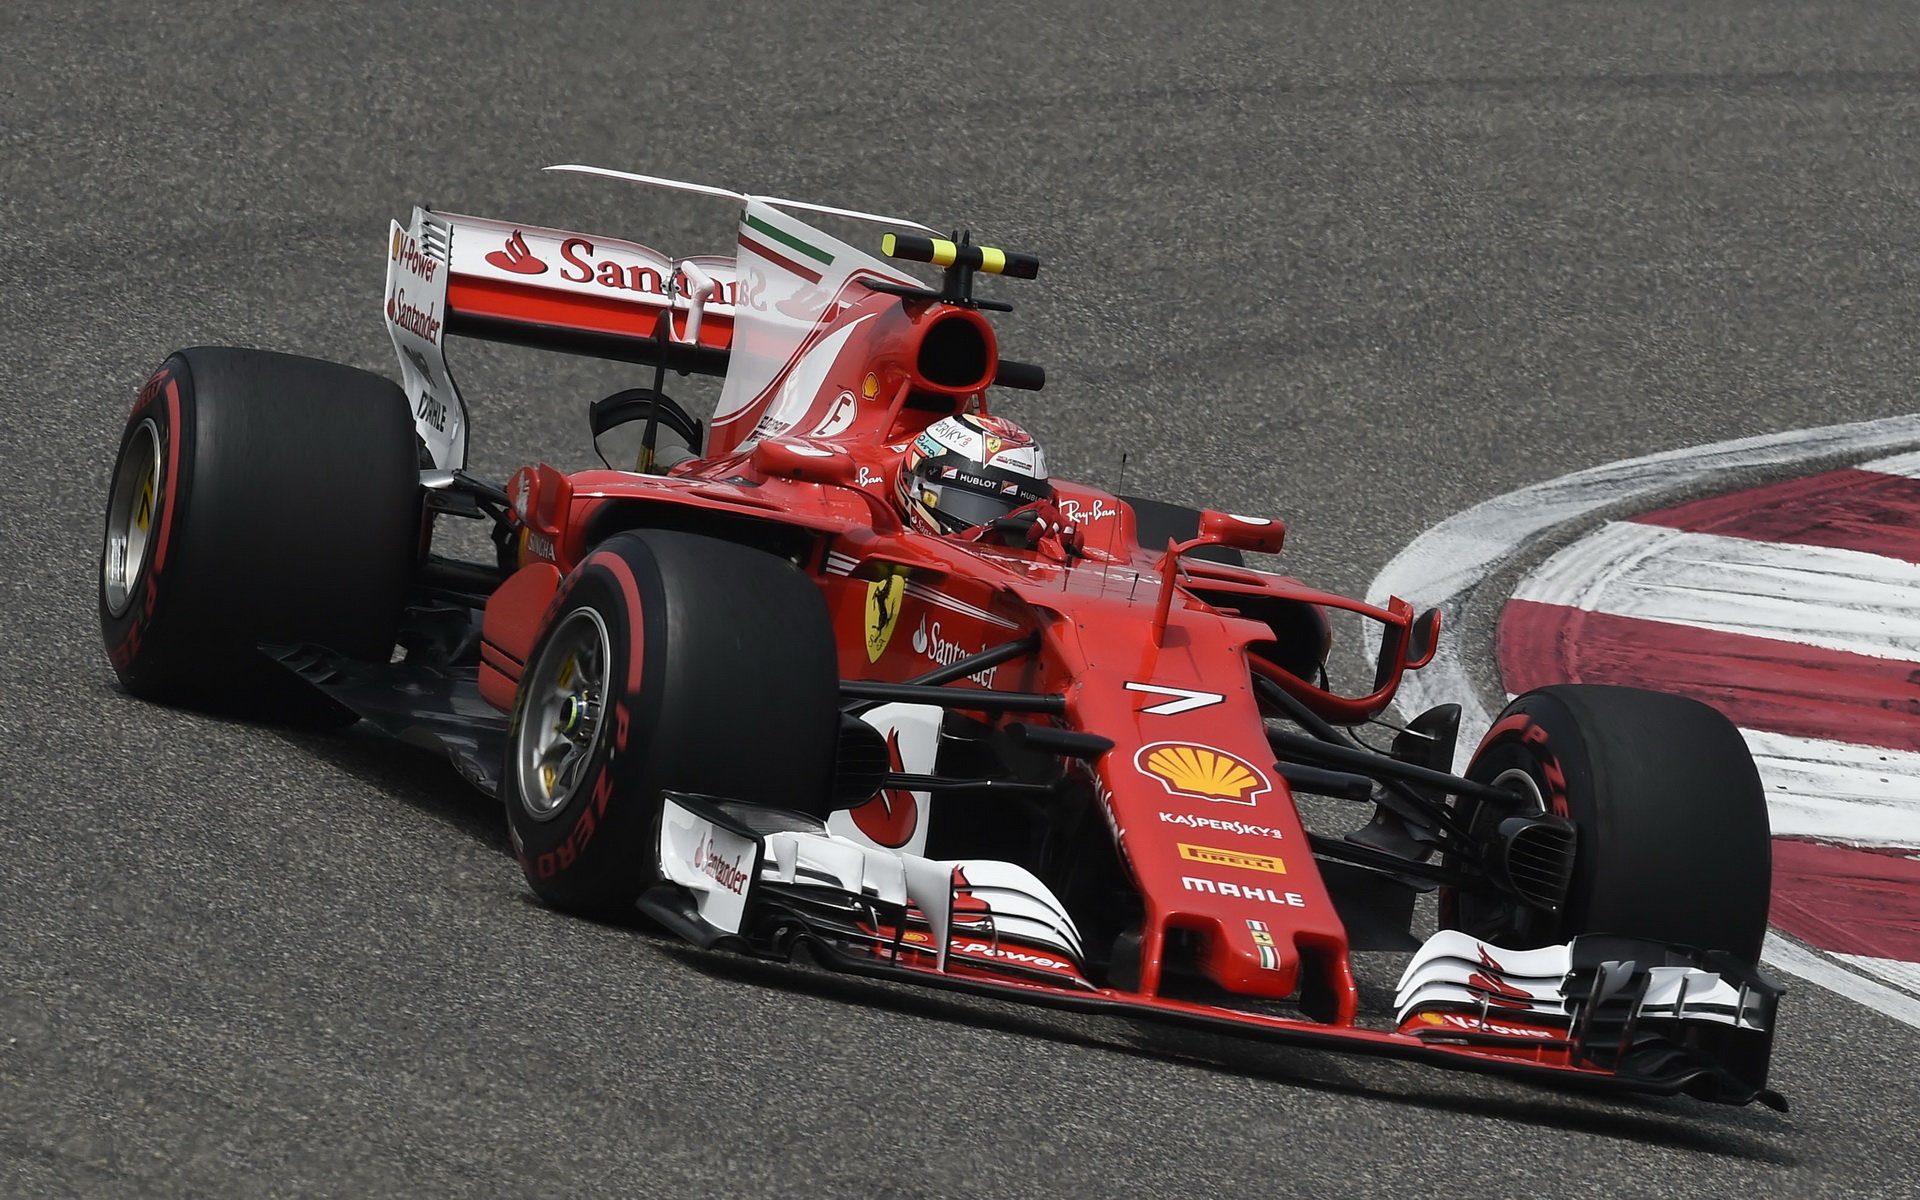 Kimi Räikkönen v kvalifikaci v Číně